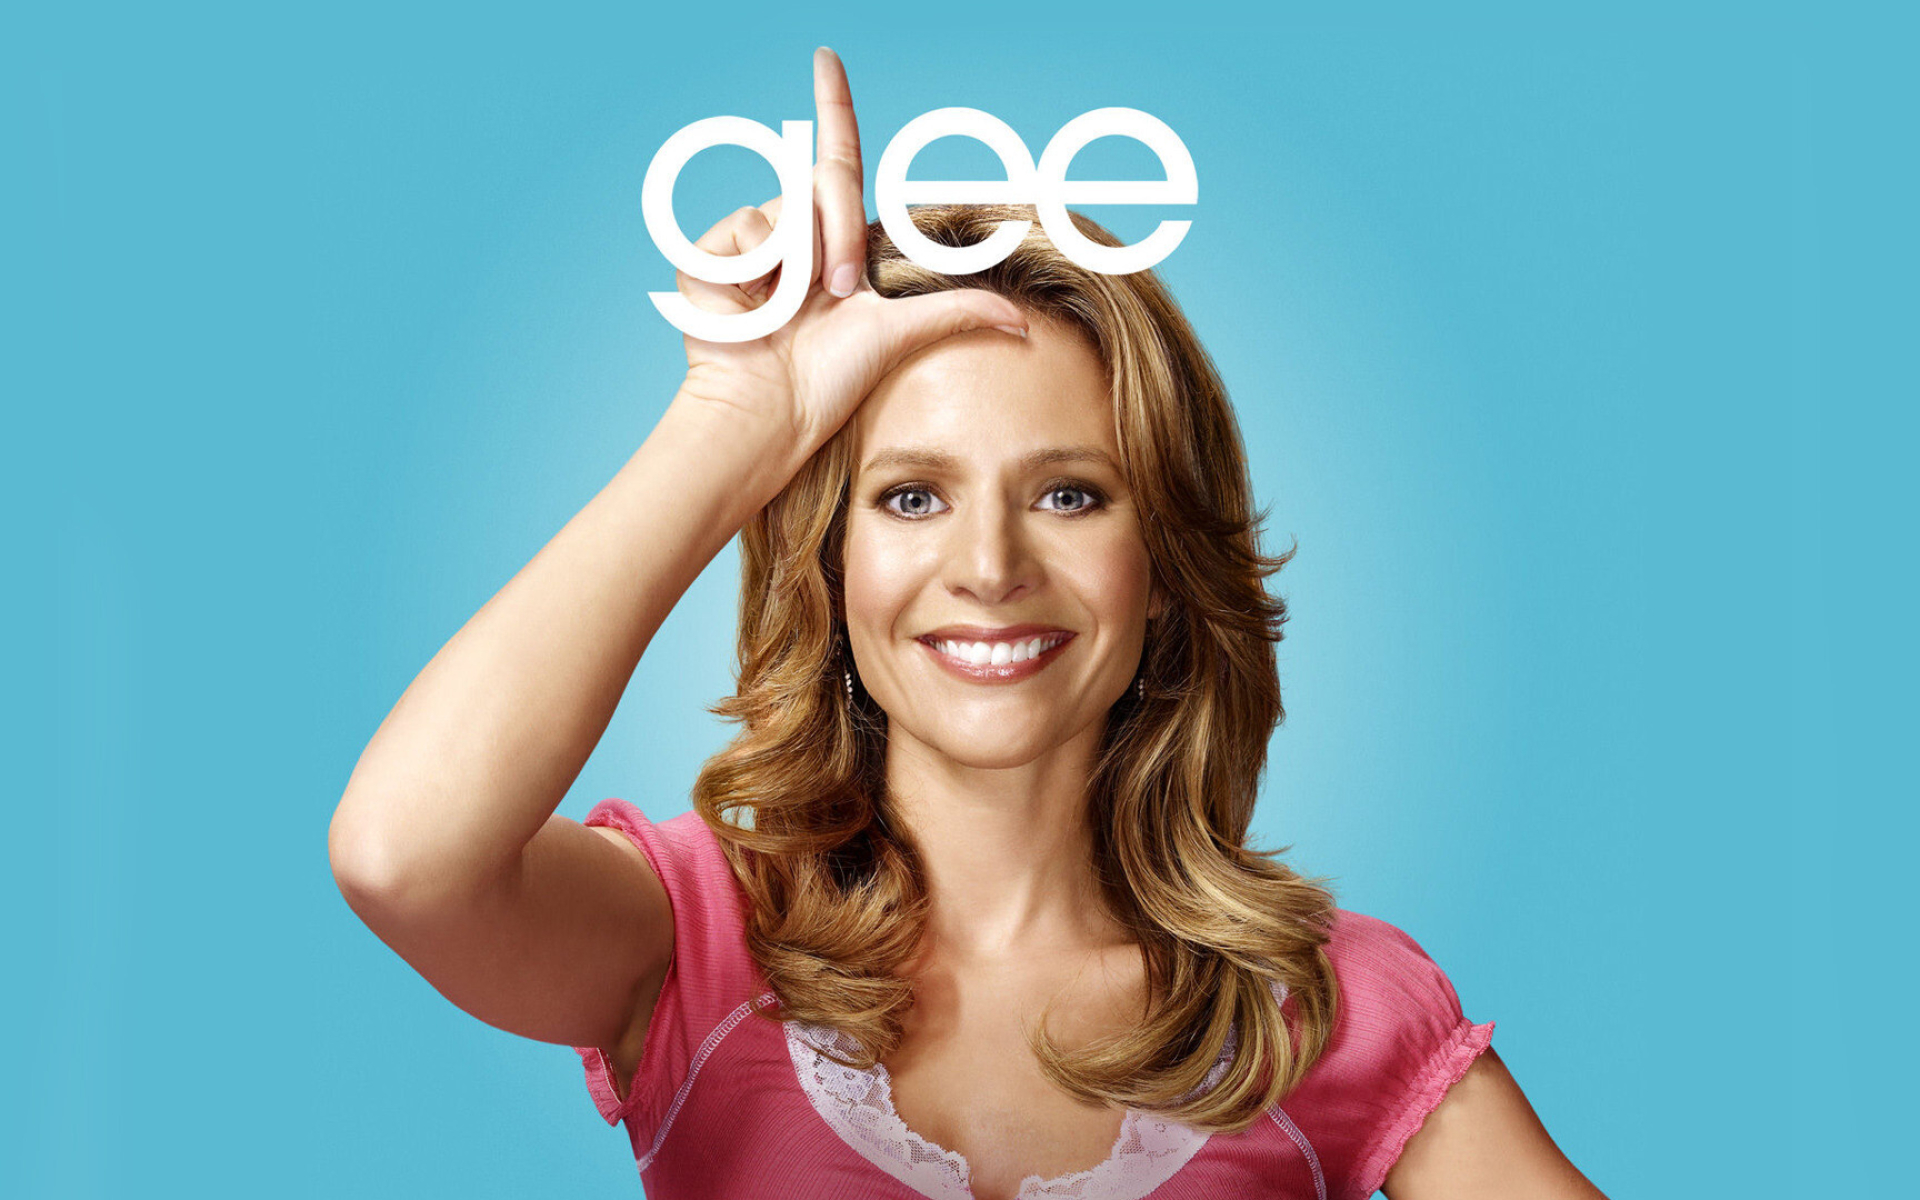 Glee (TV series): Jessalyn Gilsig as Terri Schuester, The wife of choir group director Will Schuester. 1920x1200 HD Wallpaper.